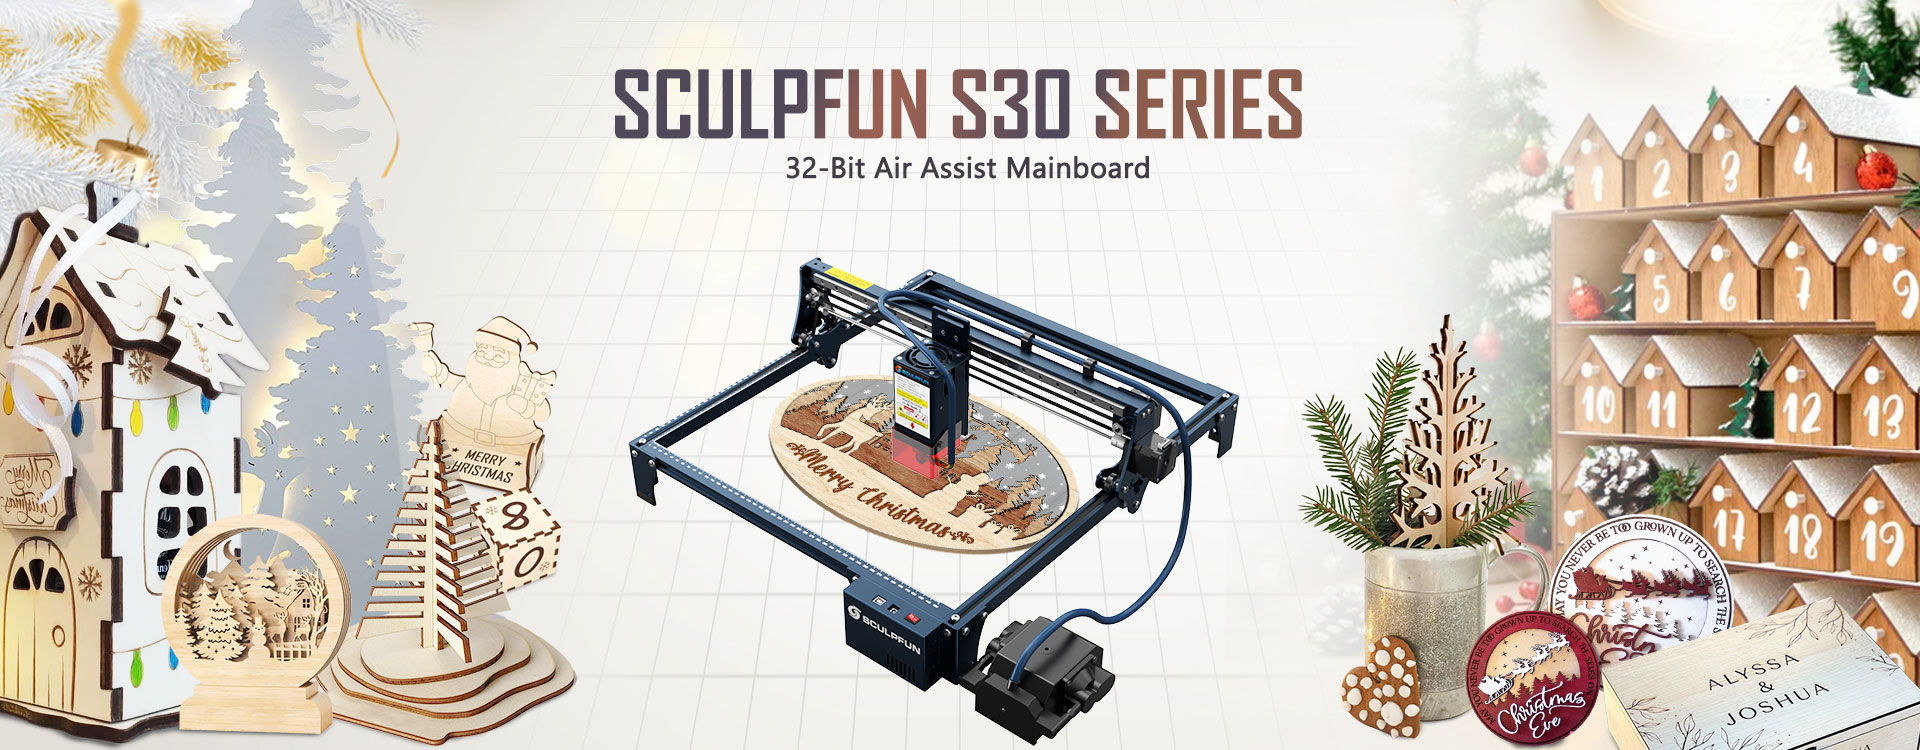 SCULPFUN S30 Pro 10W Laser Engraver Cutter, Automatic Air-assist, 0.06x0.08mm Laser Focus, 32-bit Motherboard, Replaceable Lens, 410x400mm, Expandable 935x905mm